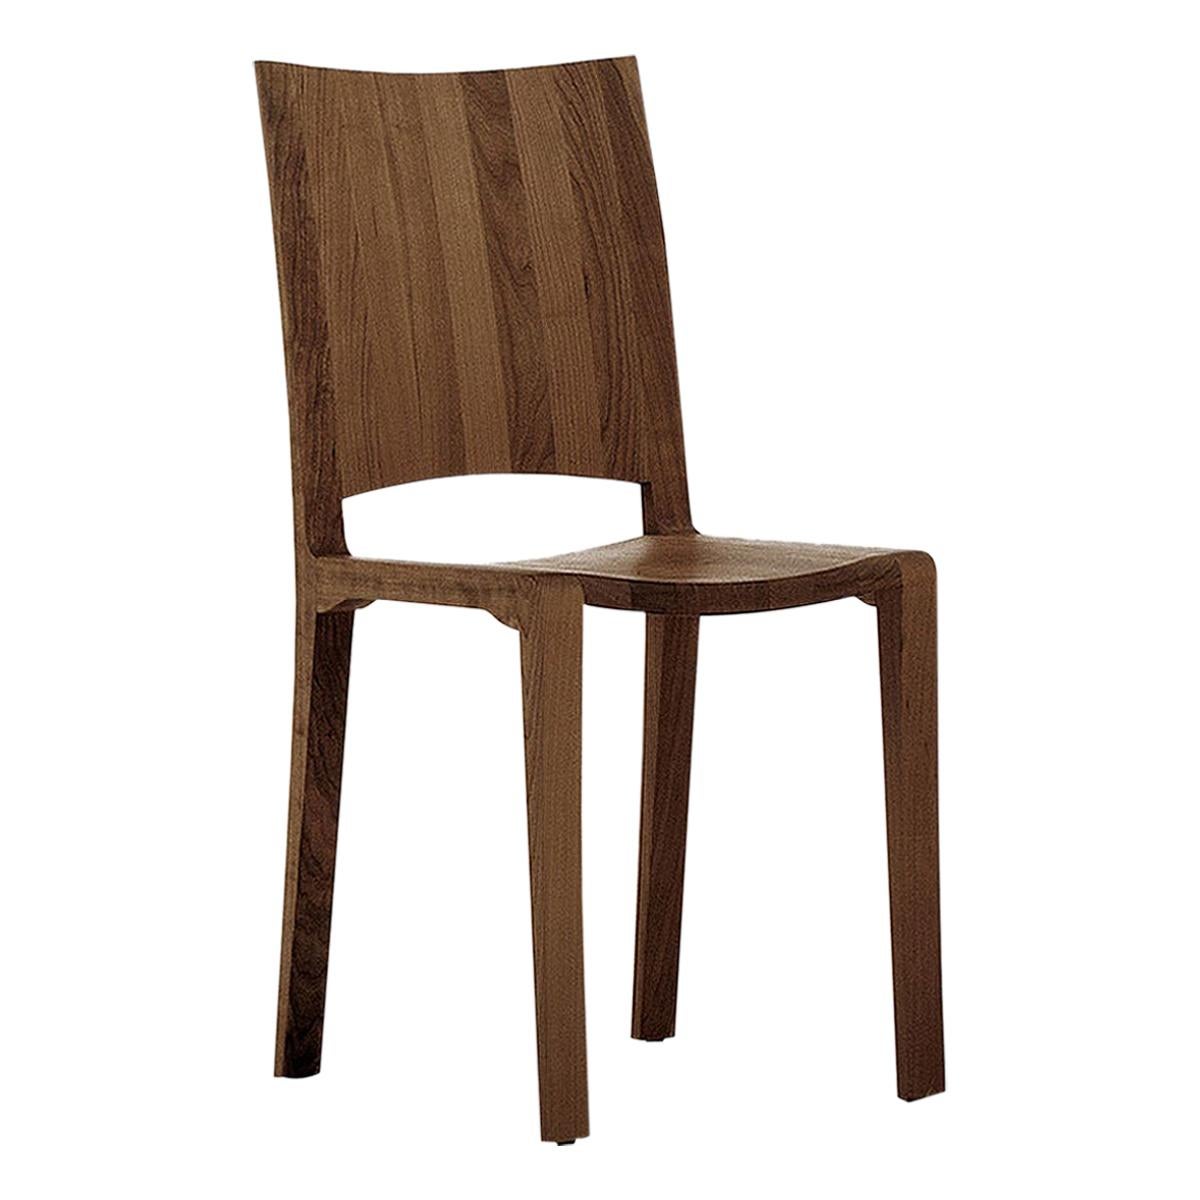 Adria Walnut Chair